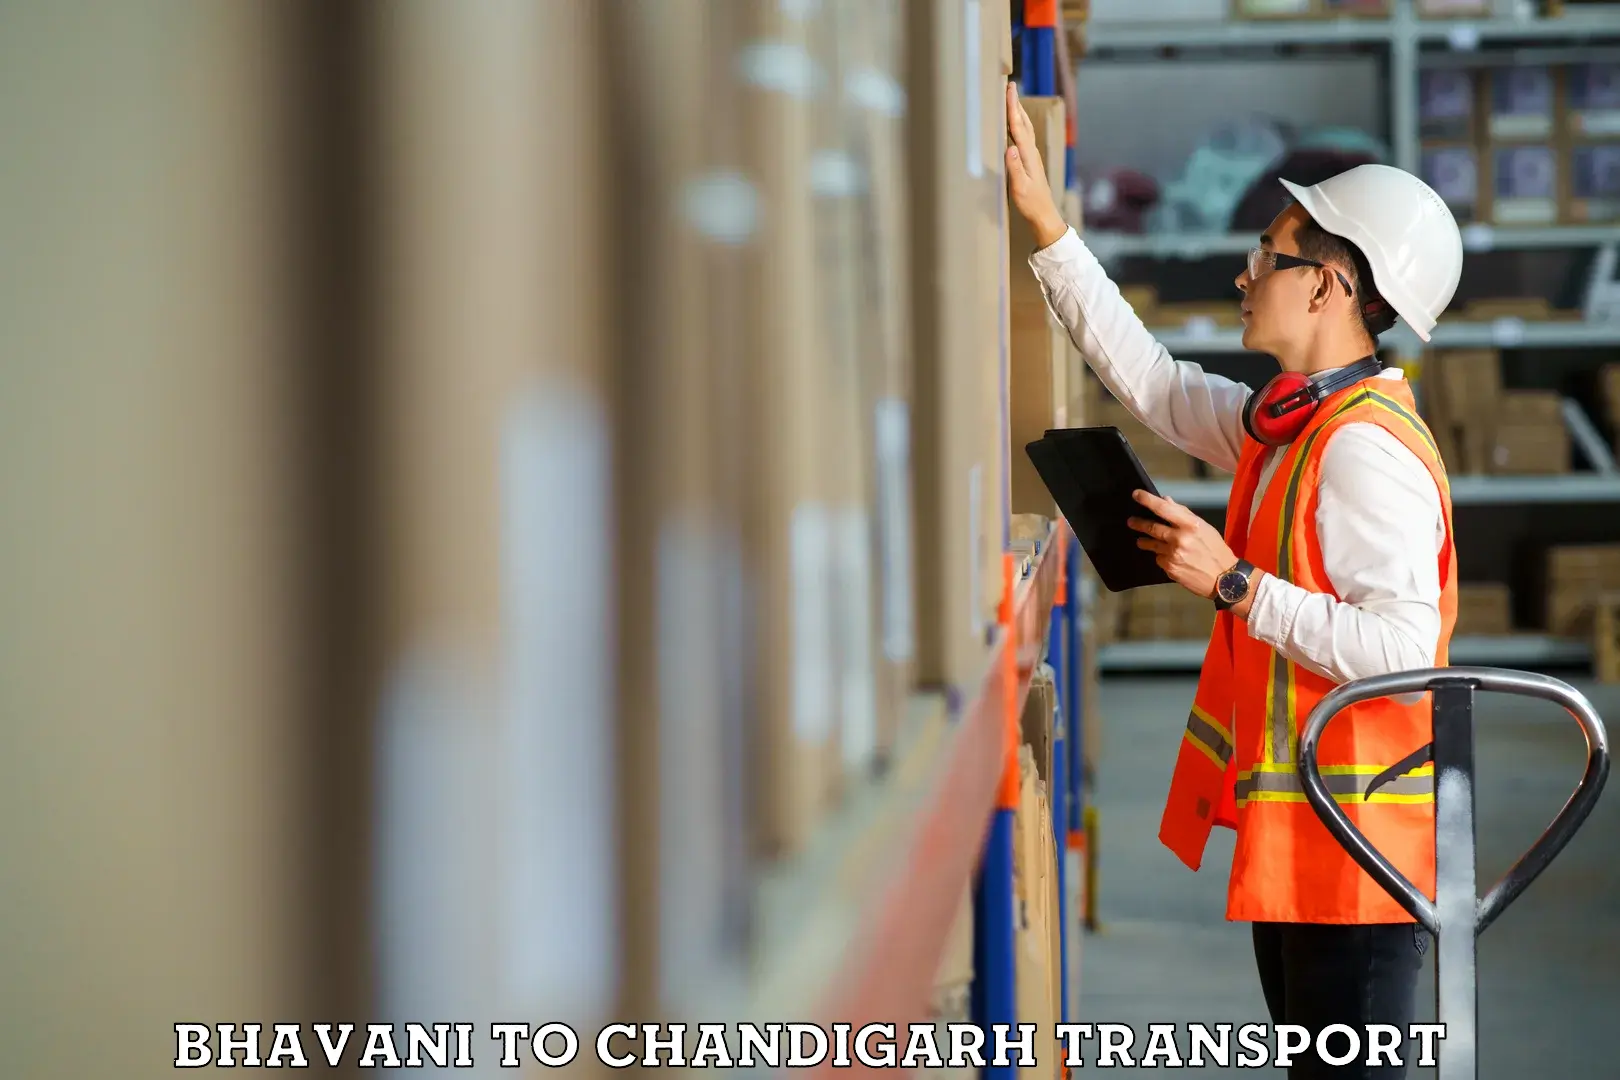 Online transport service Bhavani to Chandigarh